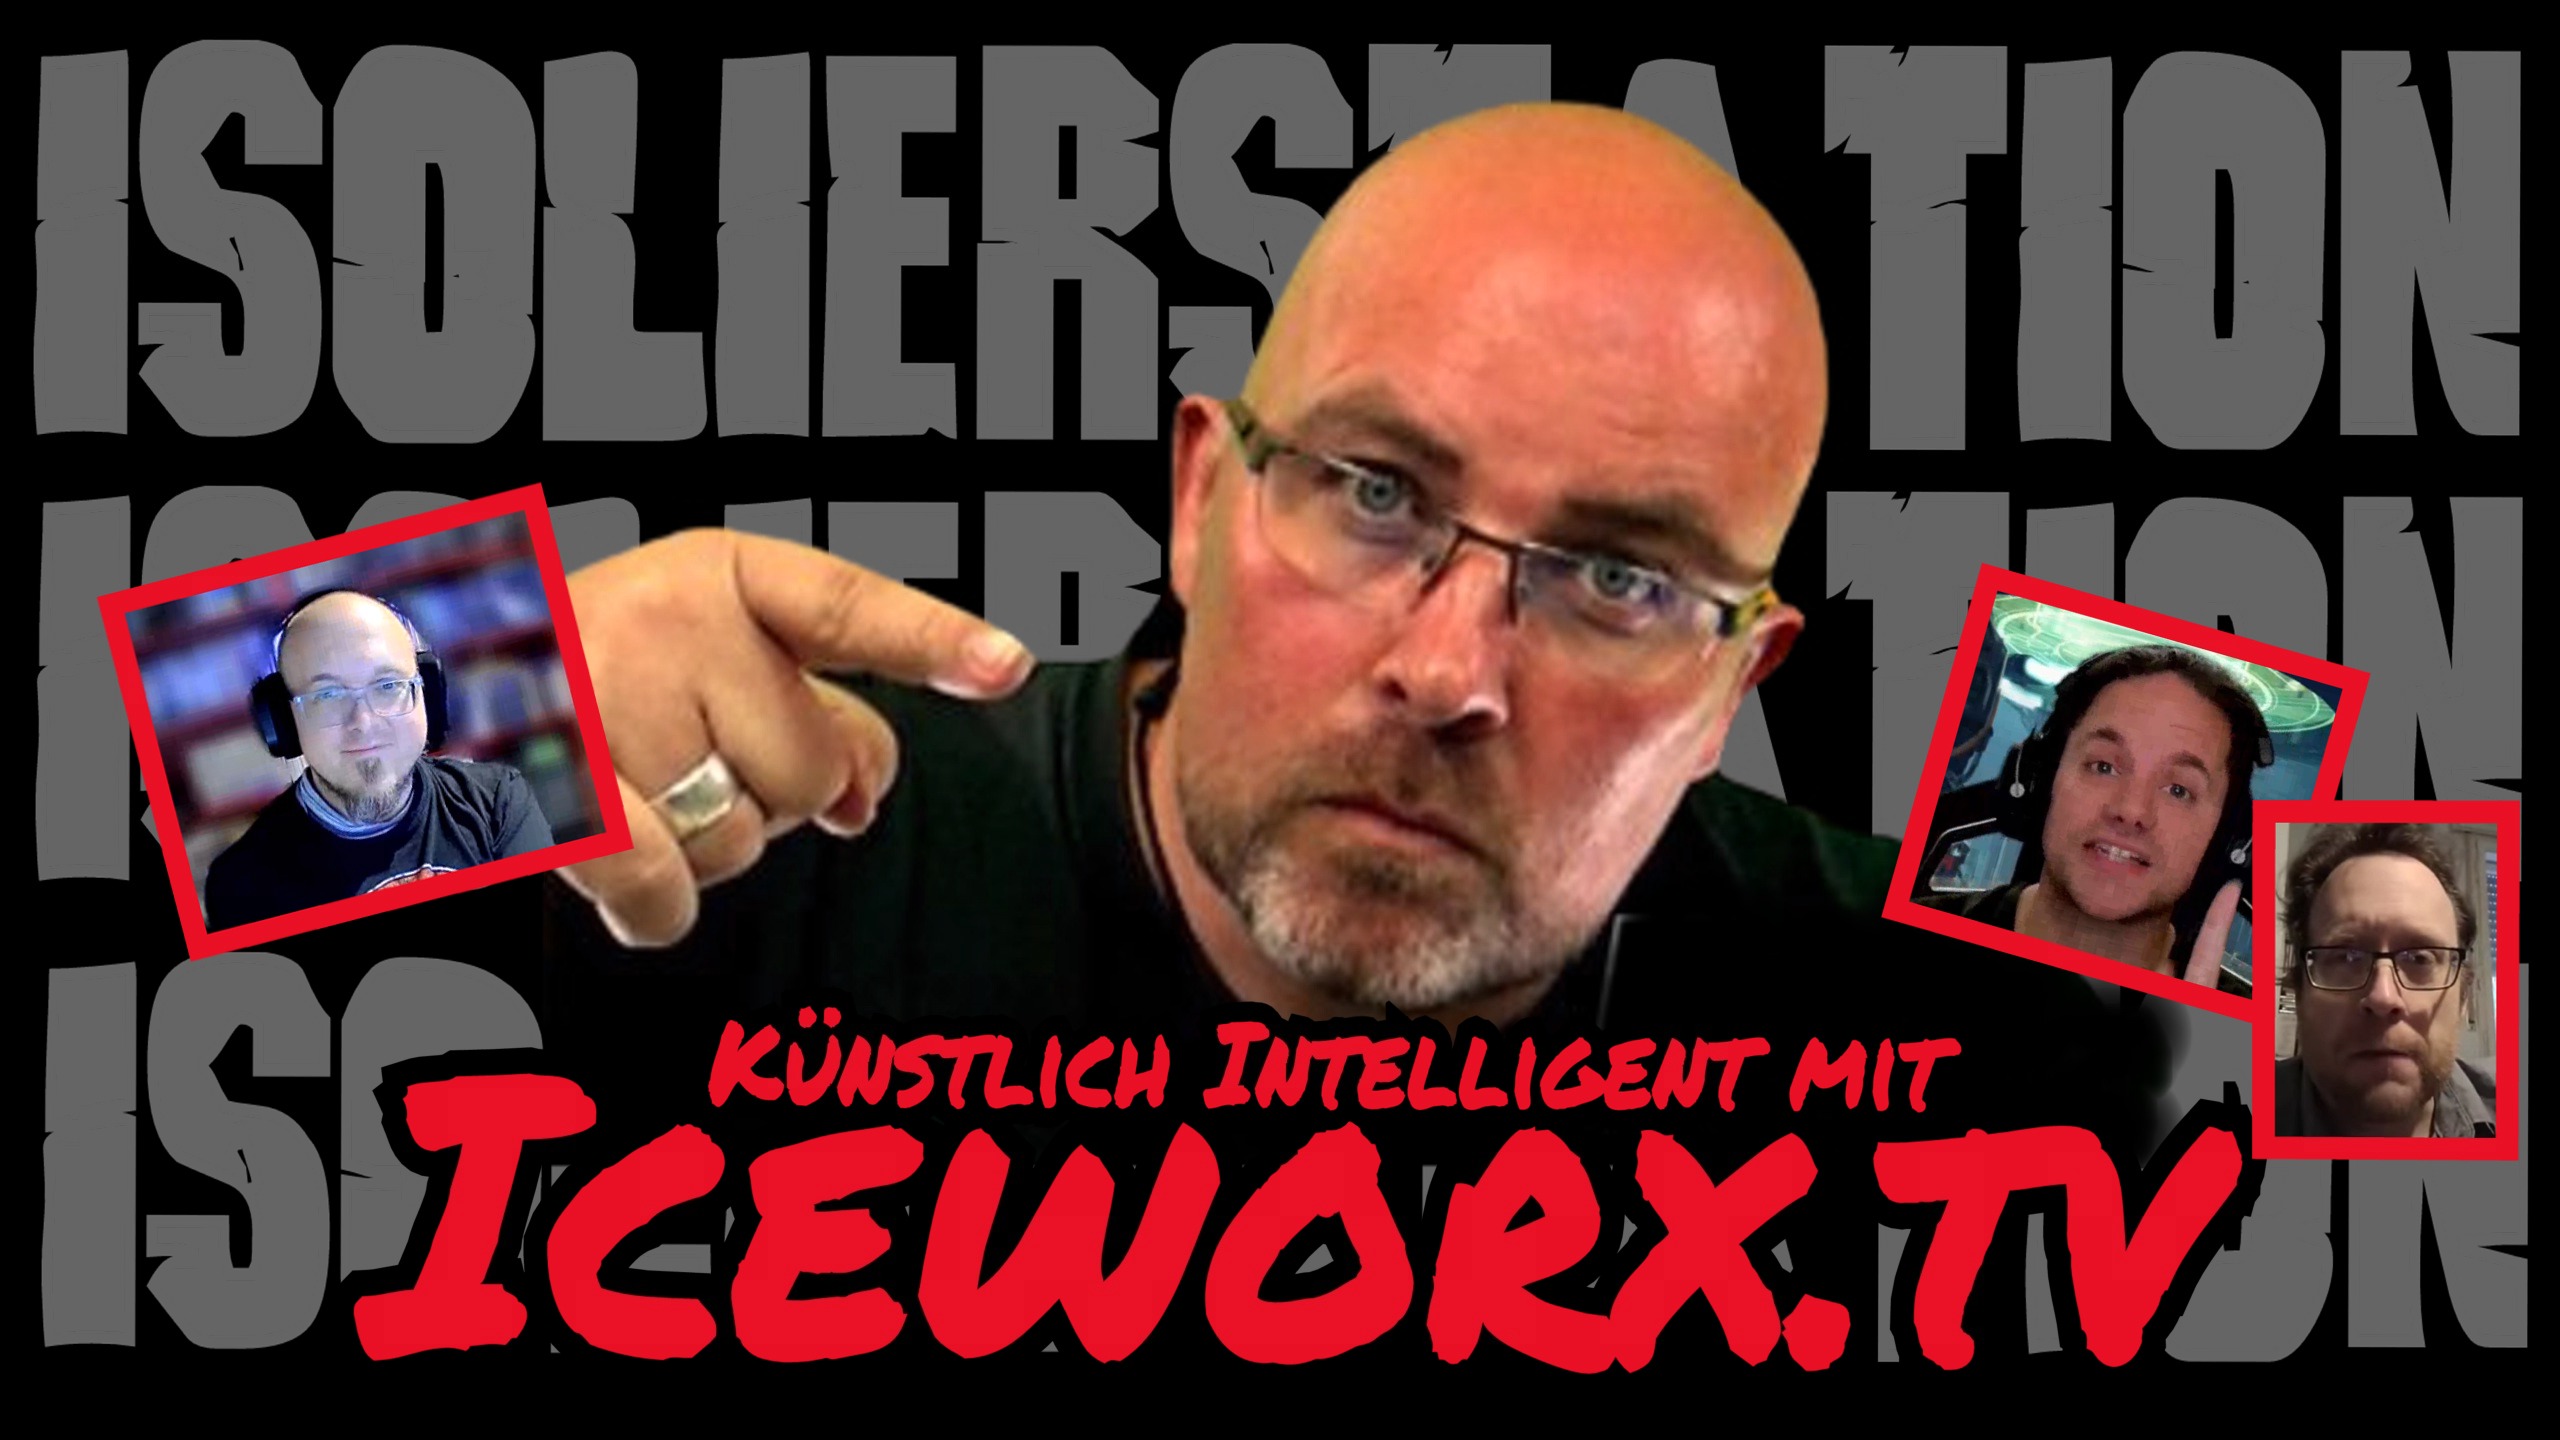 ISOLIERSTATION #281 – Künstlich Intelligent mit Iceworx.tv